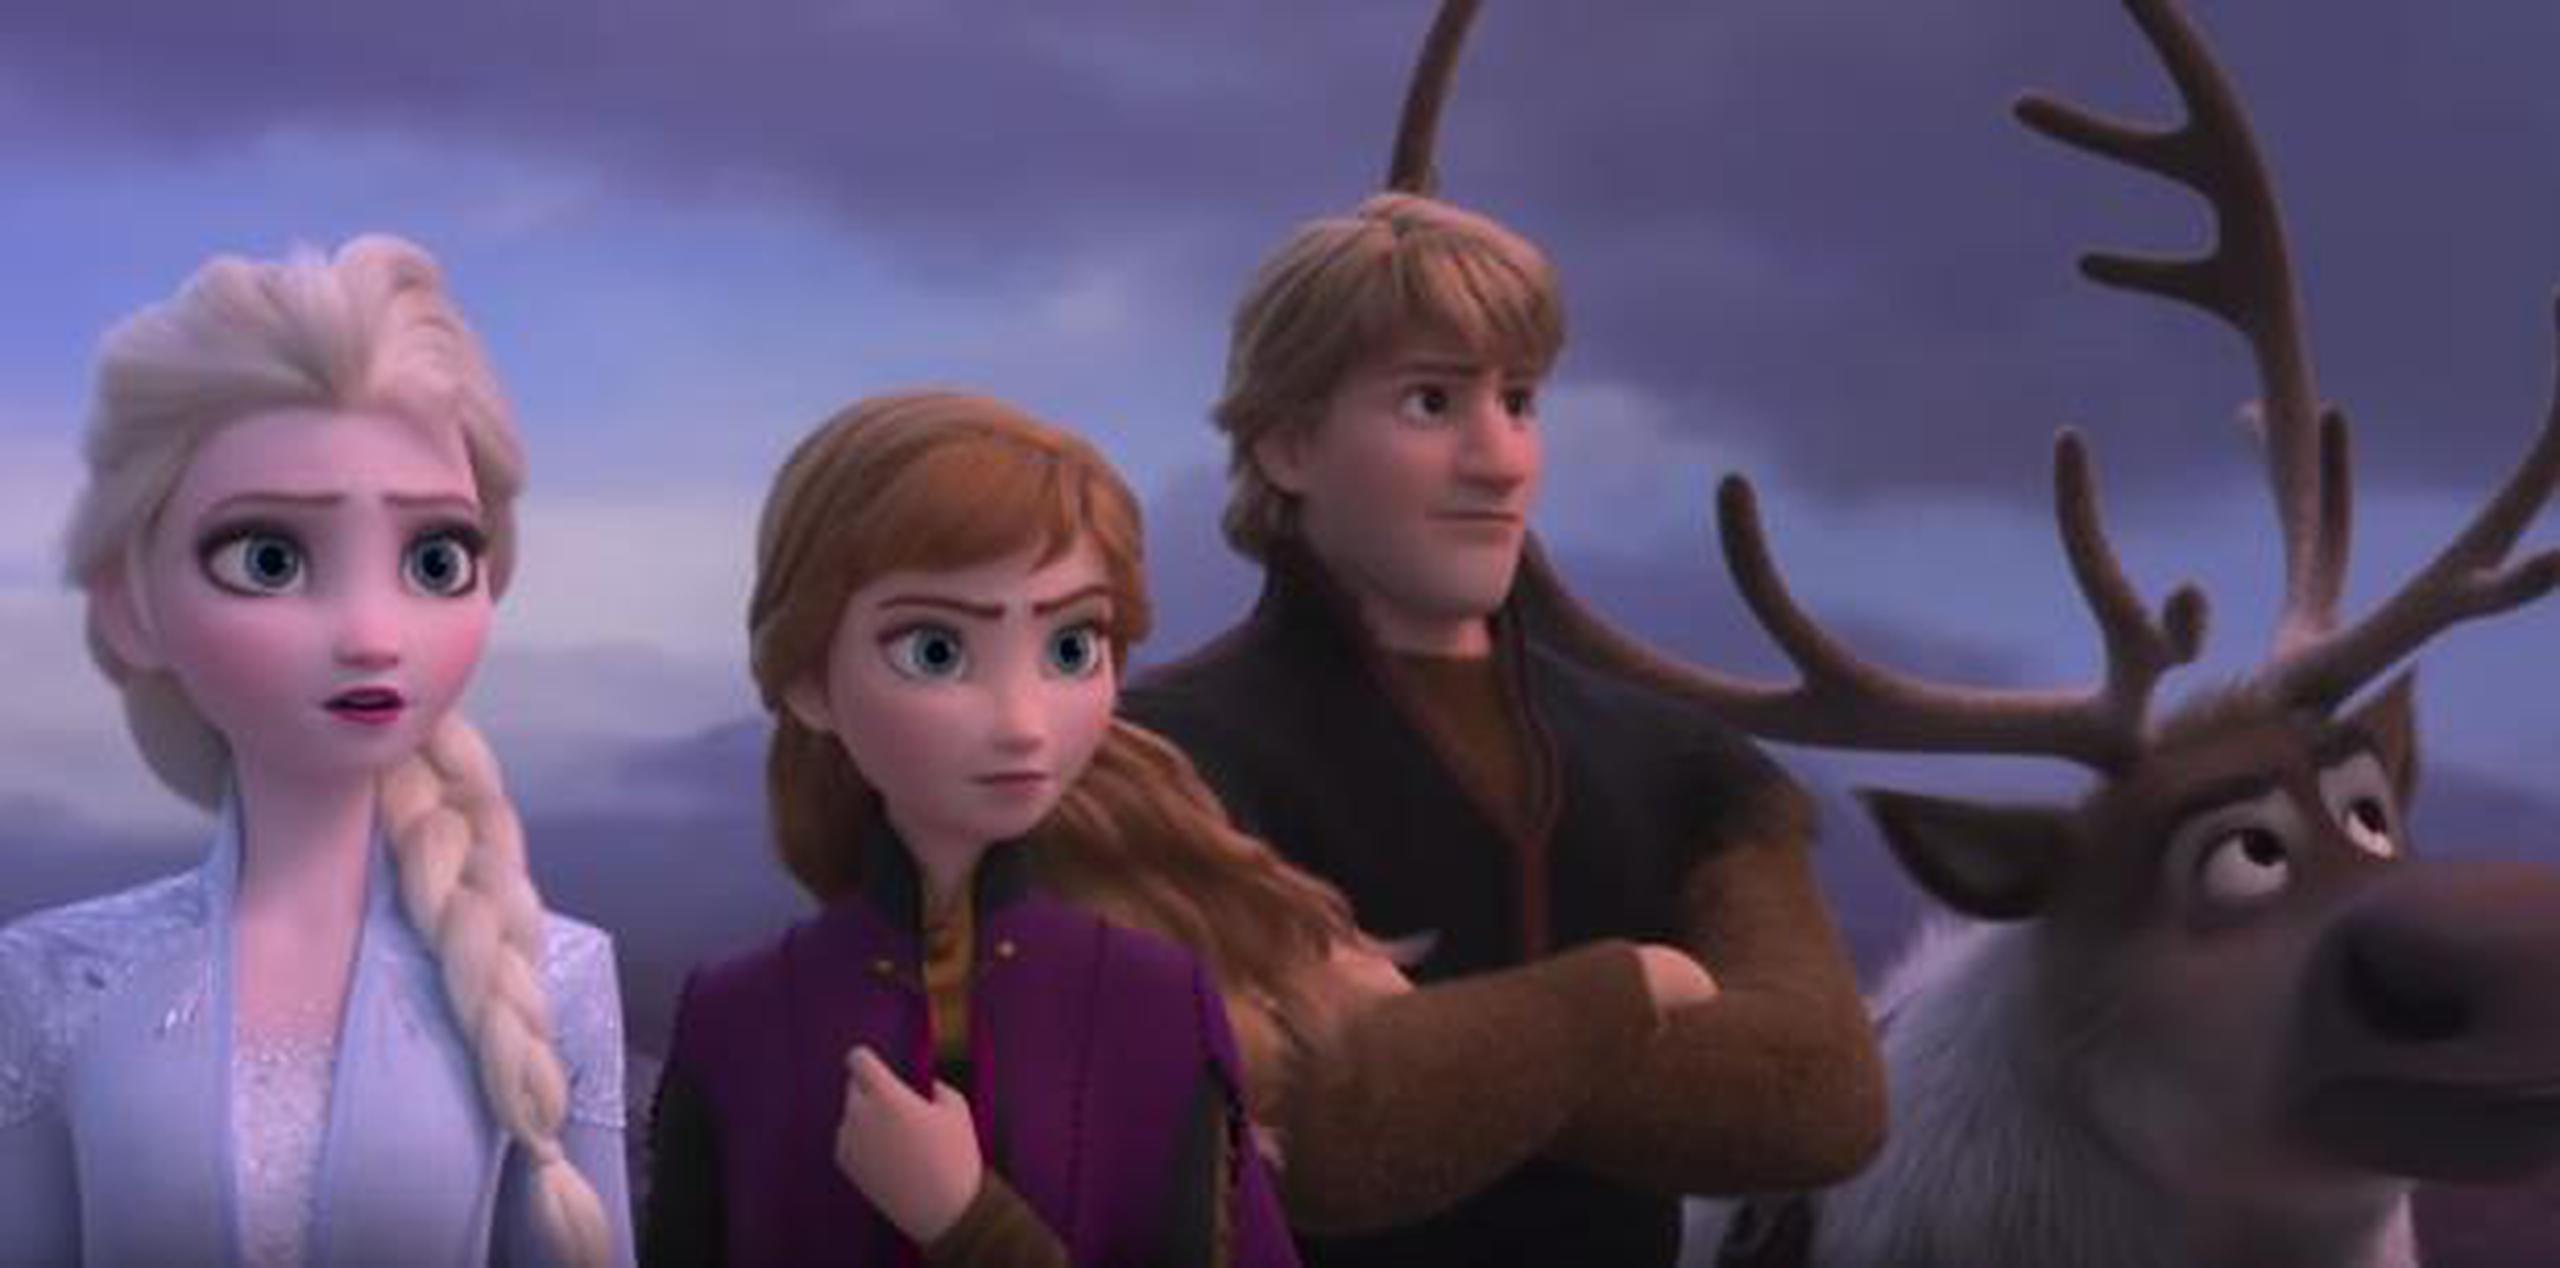 Aún no hay una sinopsis oficial de "Frozen 2", pero gracias al vídeo se puede inferir que la estación del otoño podría tener mucho que ver con la trama. (Walt Disney Animation Studios)